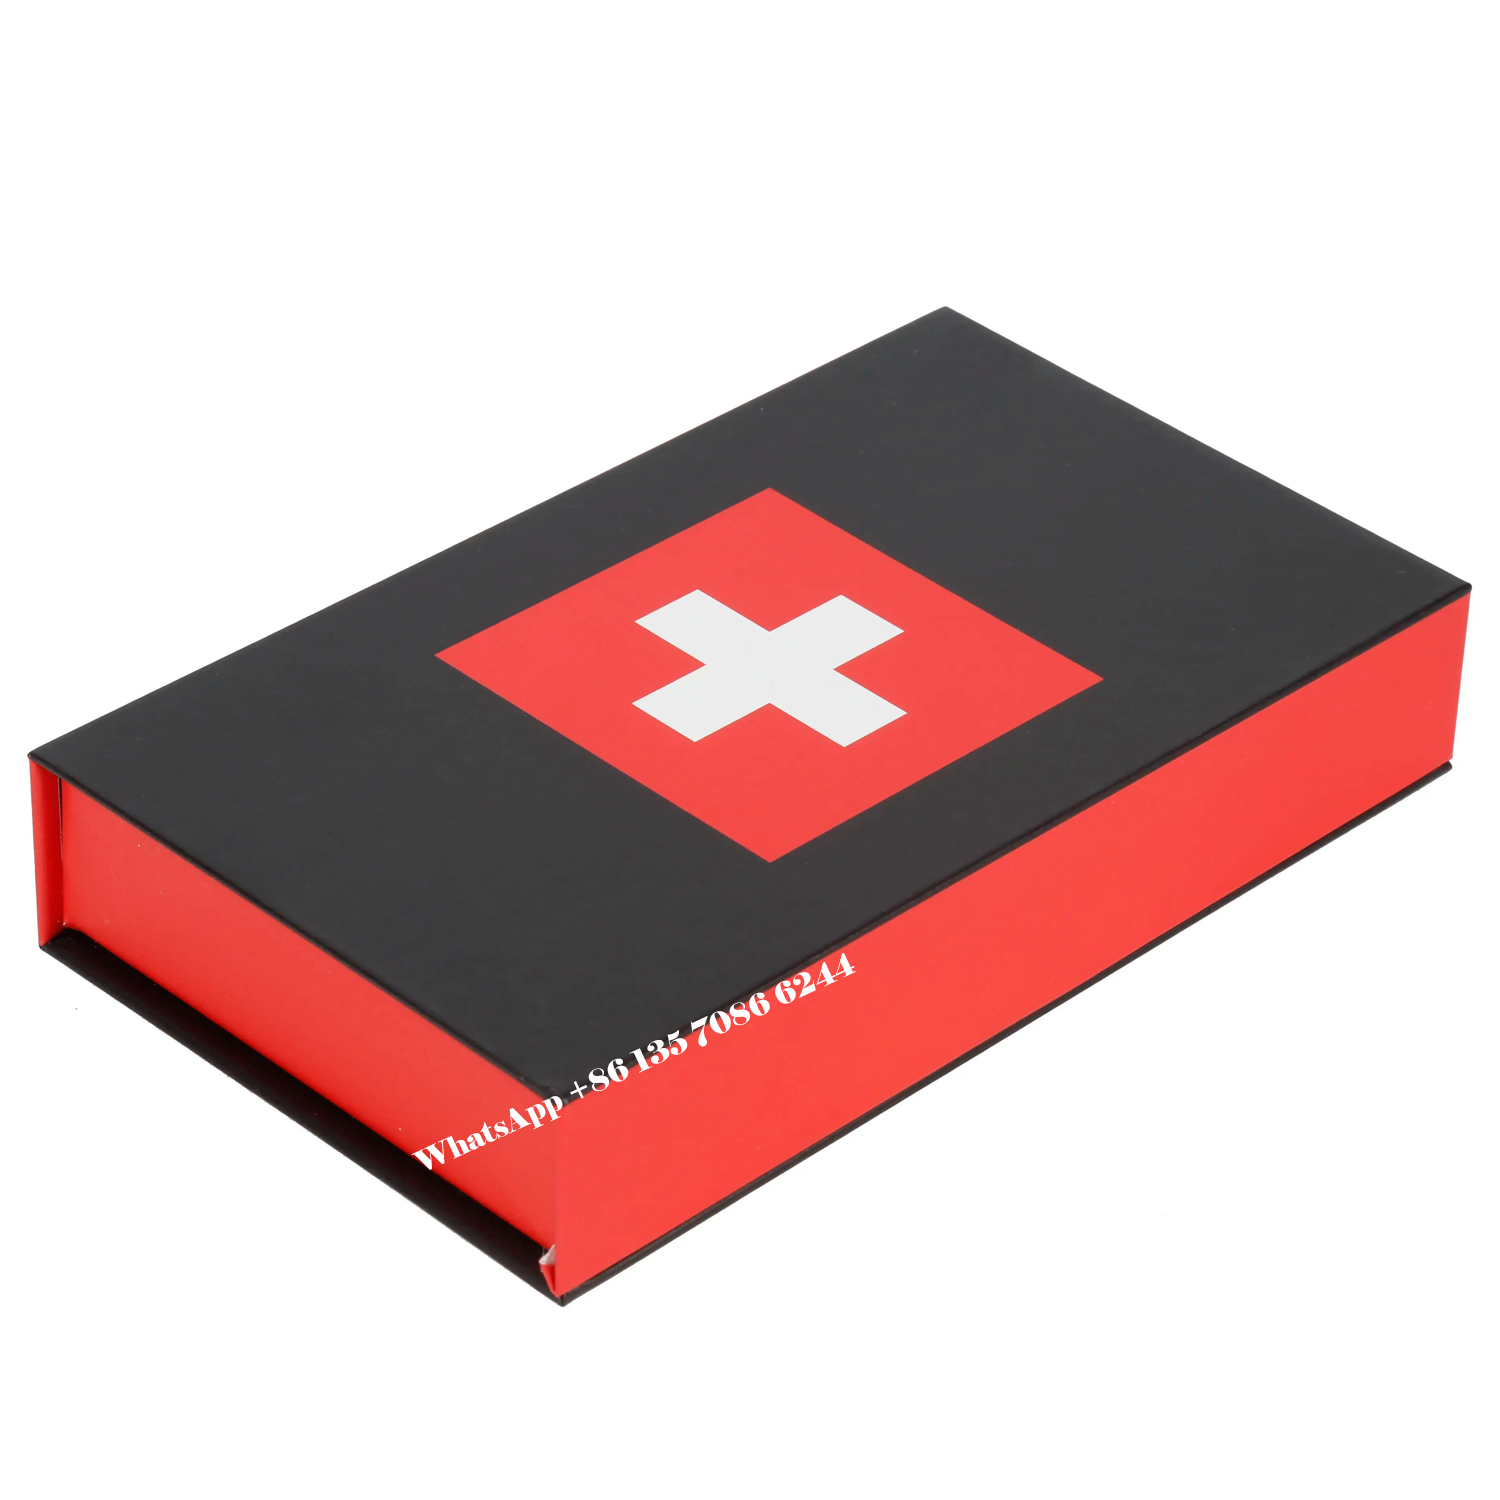  Boîte cadeau magnétique pour chocolats avec séparateurs en carton  